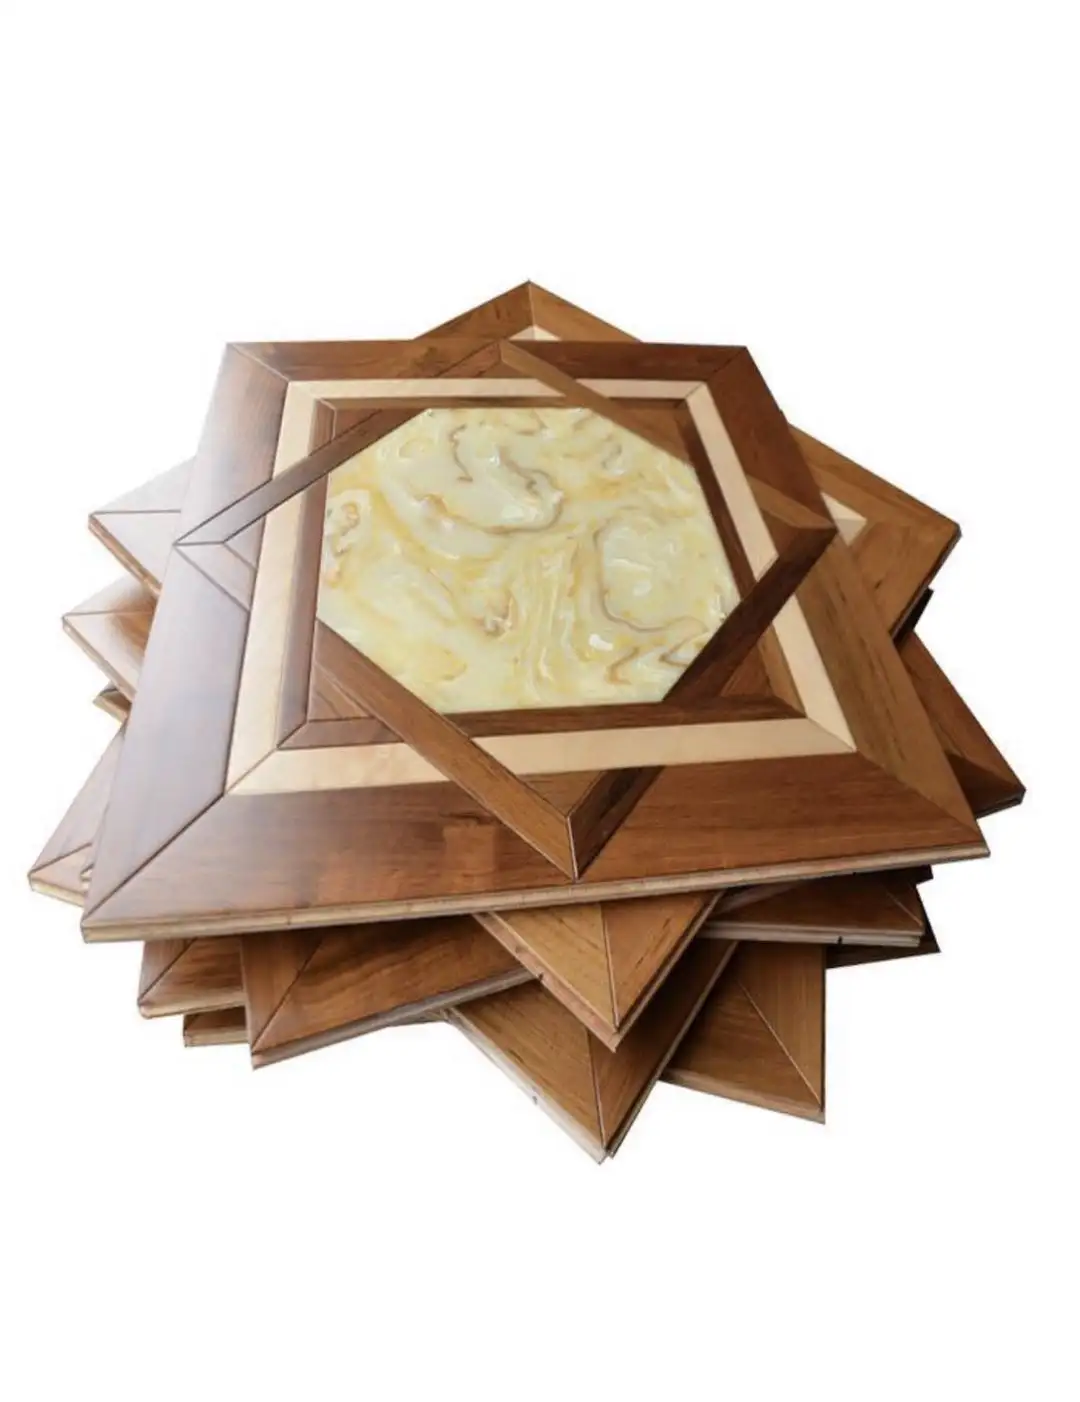 Suelo de madera de ingeniería natural personalizado, con incrustaciones de mármol de ónix blanco, patrón de suelo de parquet de madera de roble